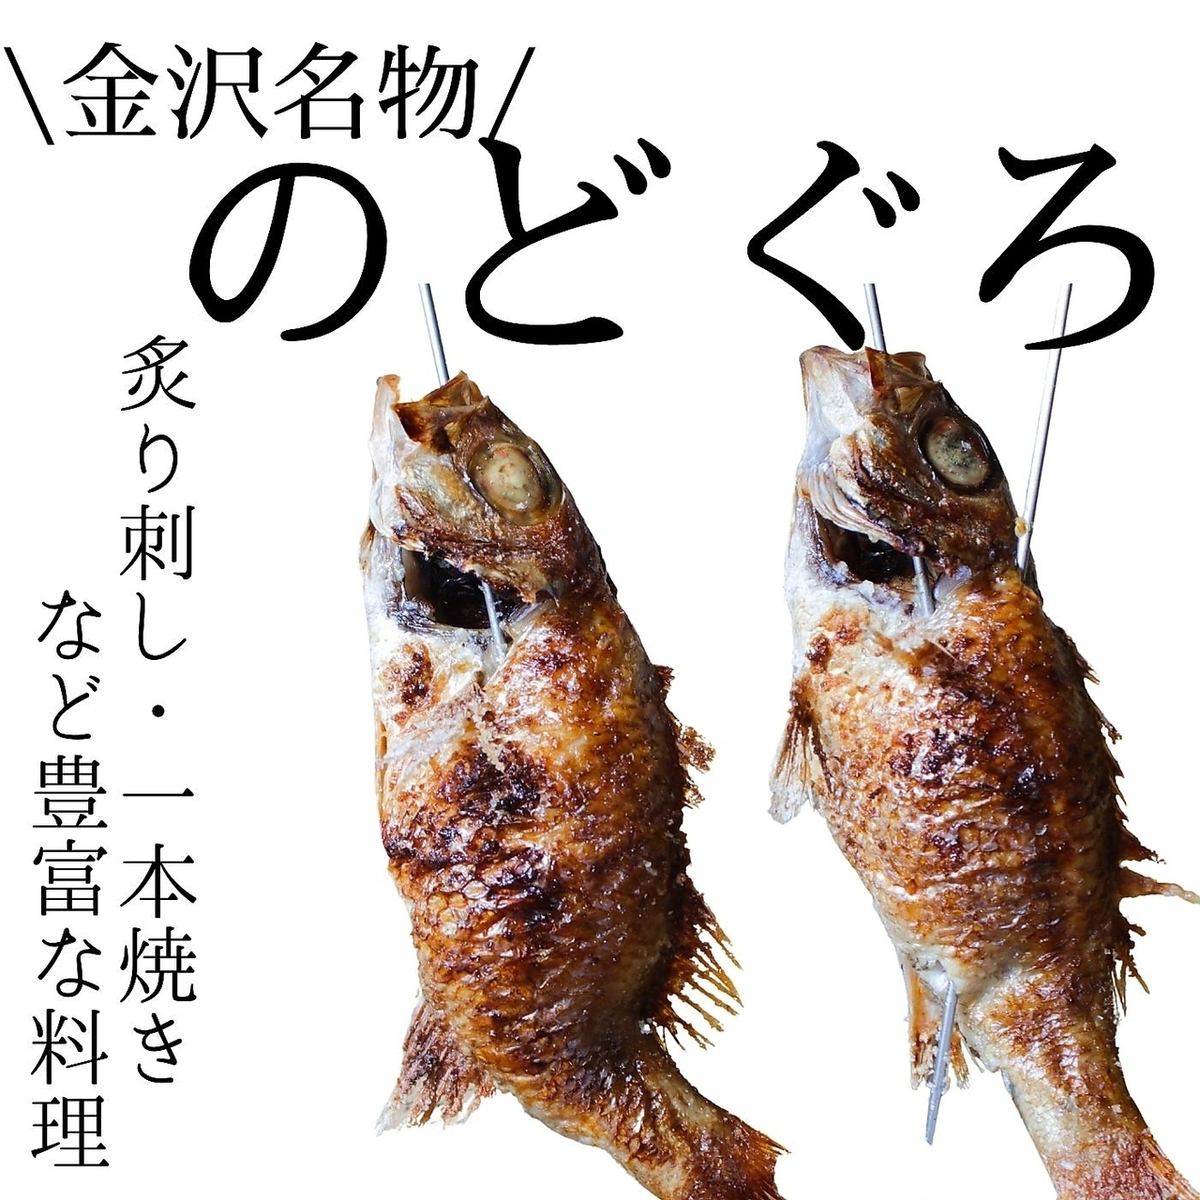 請先訂購！早上捕獲的鮮魚生魚片！